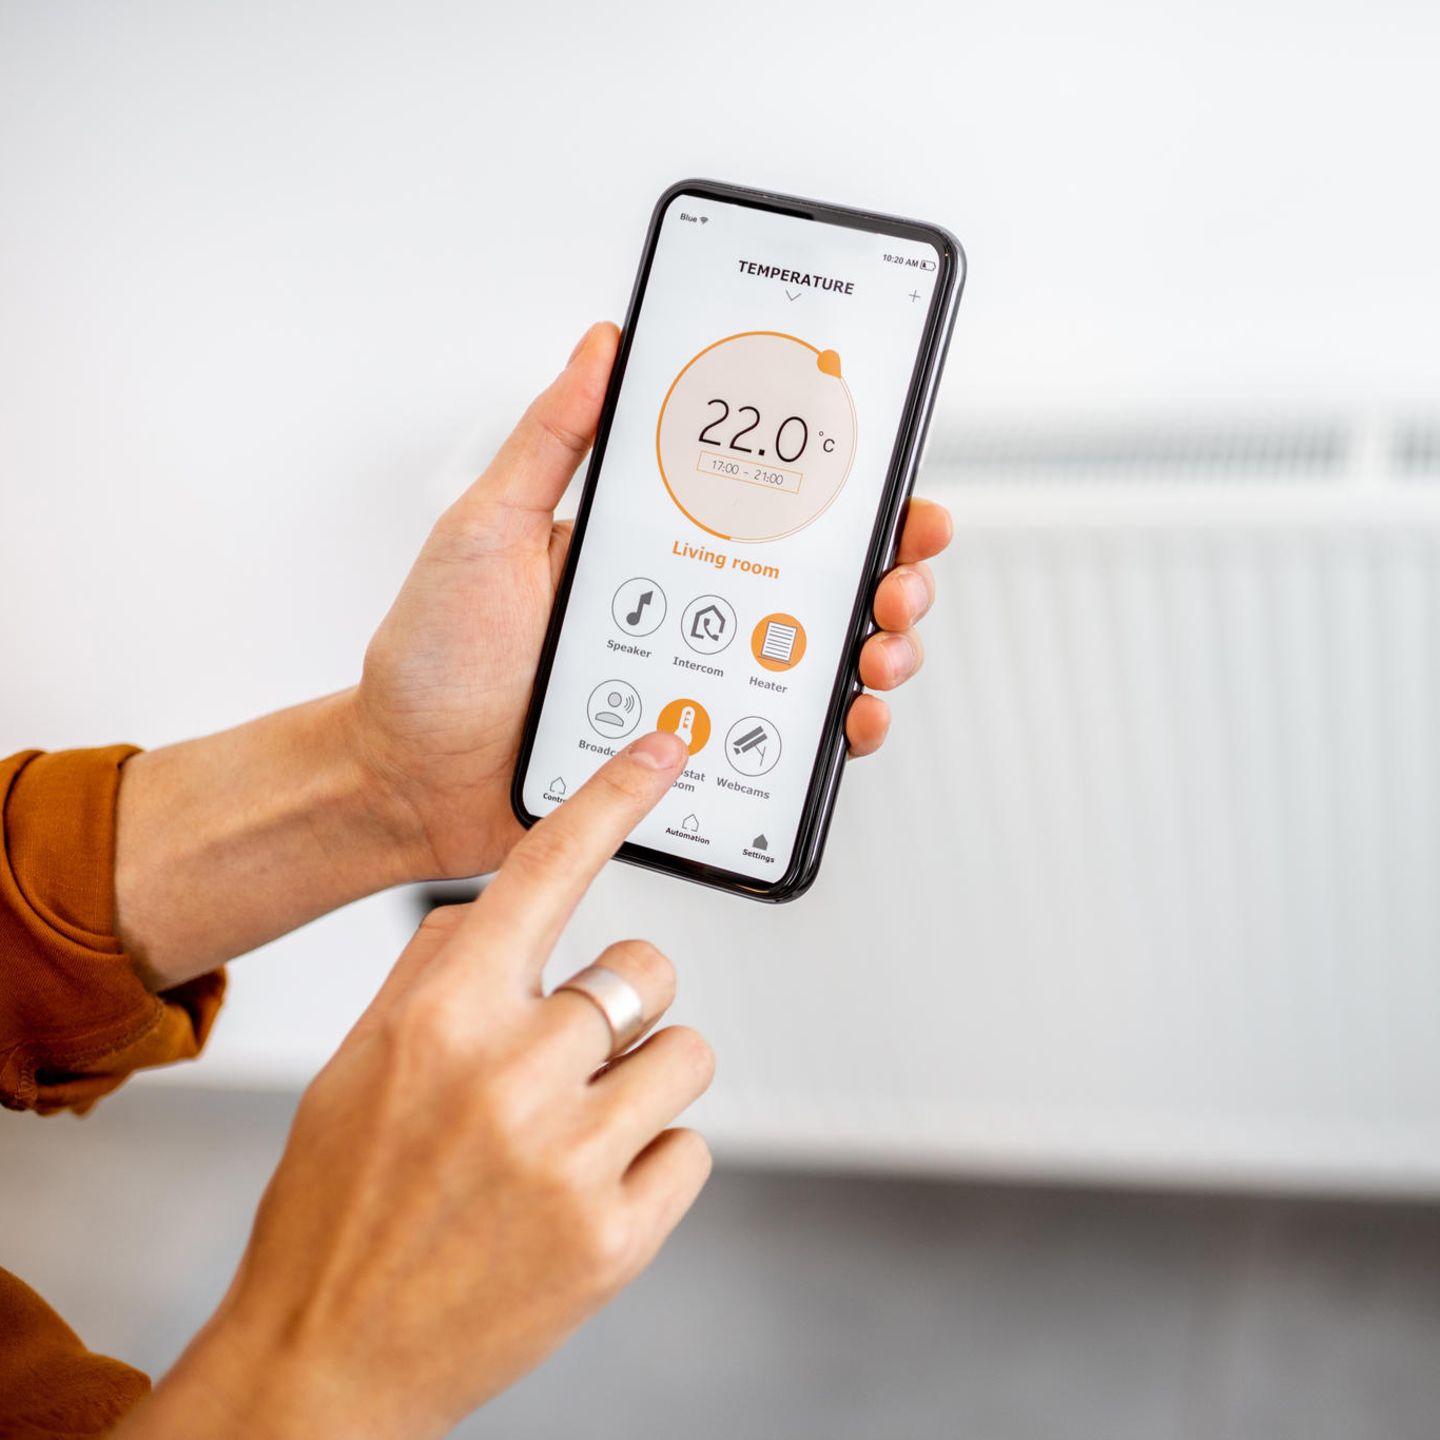 Smarte Thermostate: Welche sind die besten? - [GEO]